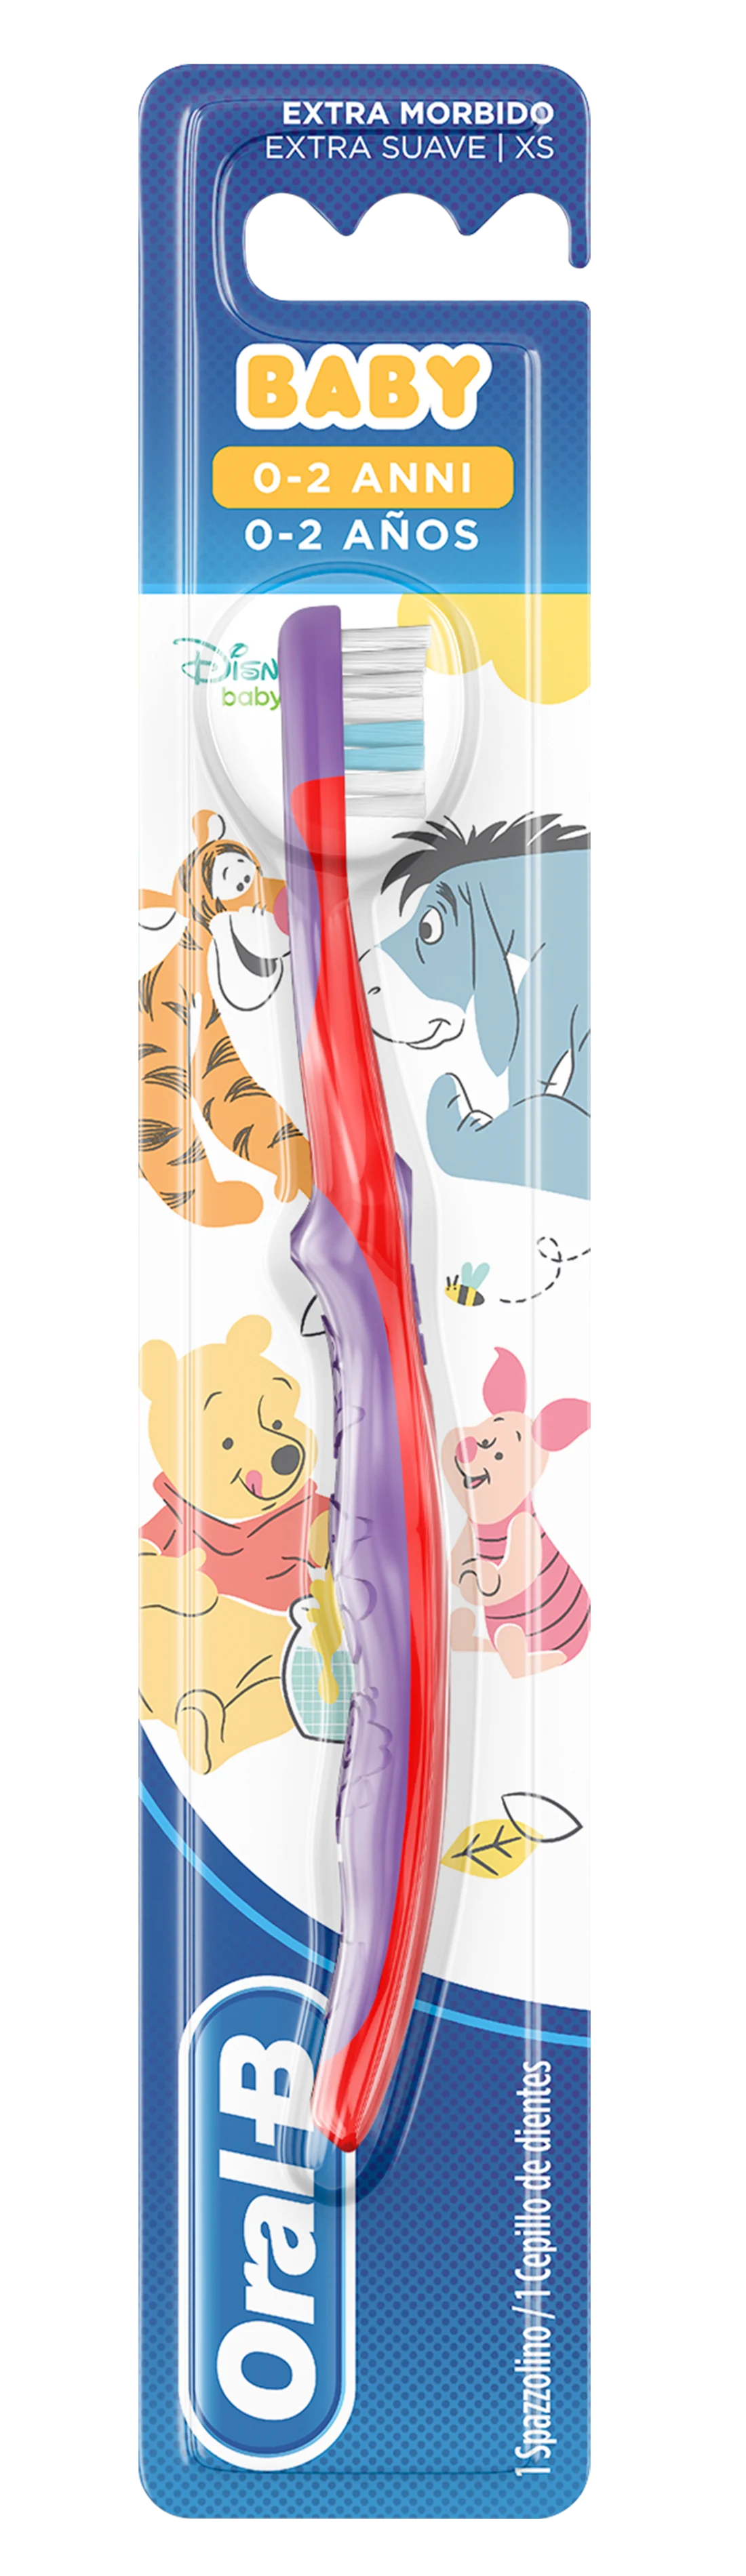 Spazzolino manuale per bambini Oral-B con personaggi di Winnie The Pooh 